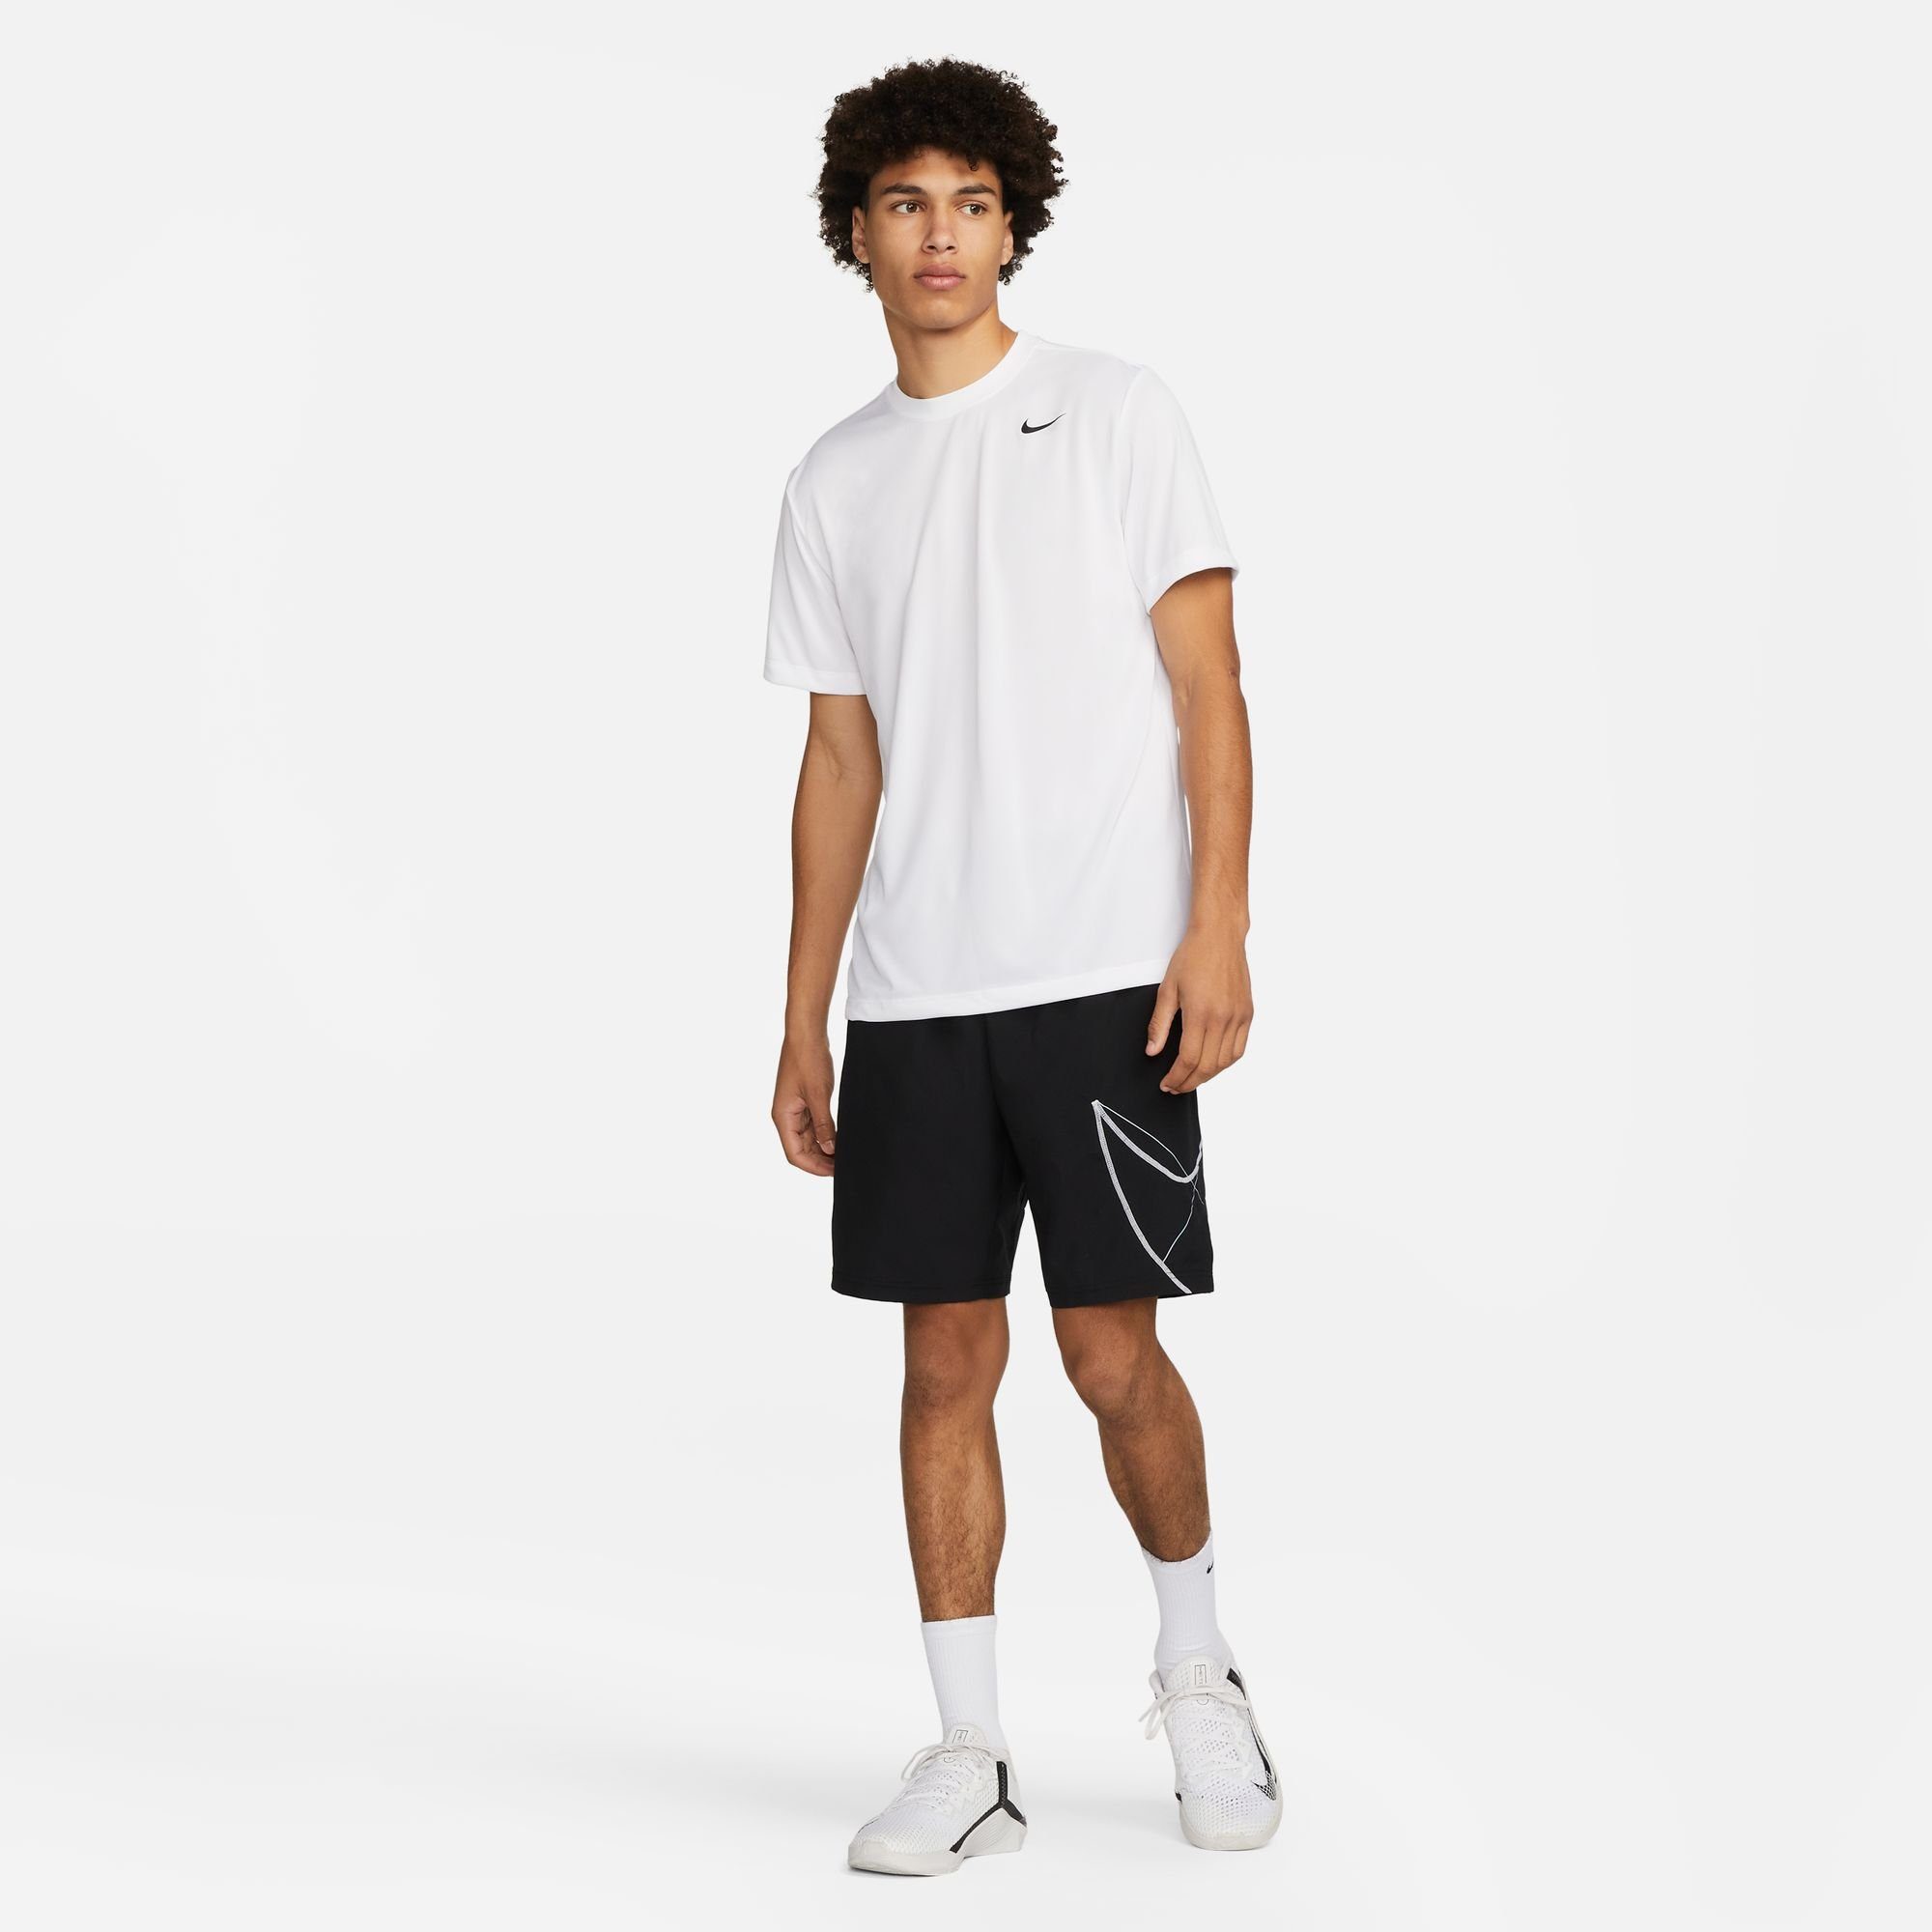 Nike T-SHIRT DRI-FIT WHITE/BLACK FITNESS Trainingsshirt LEGEND MEN'S